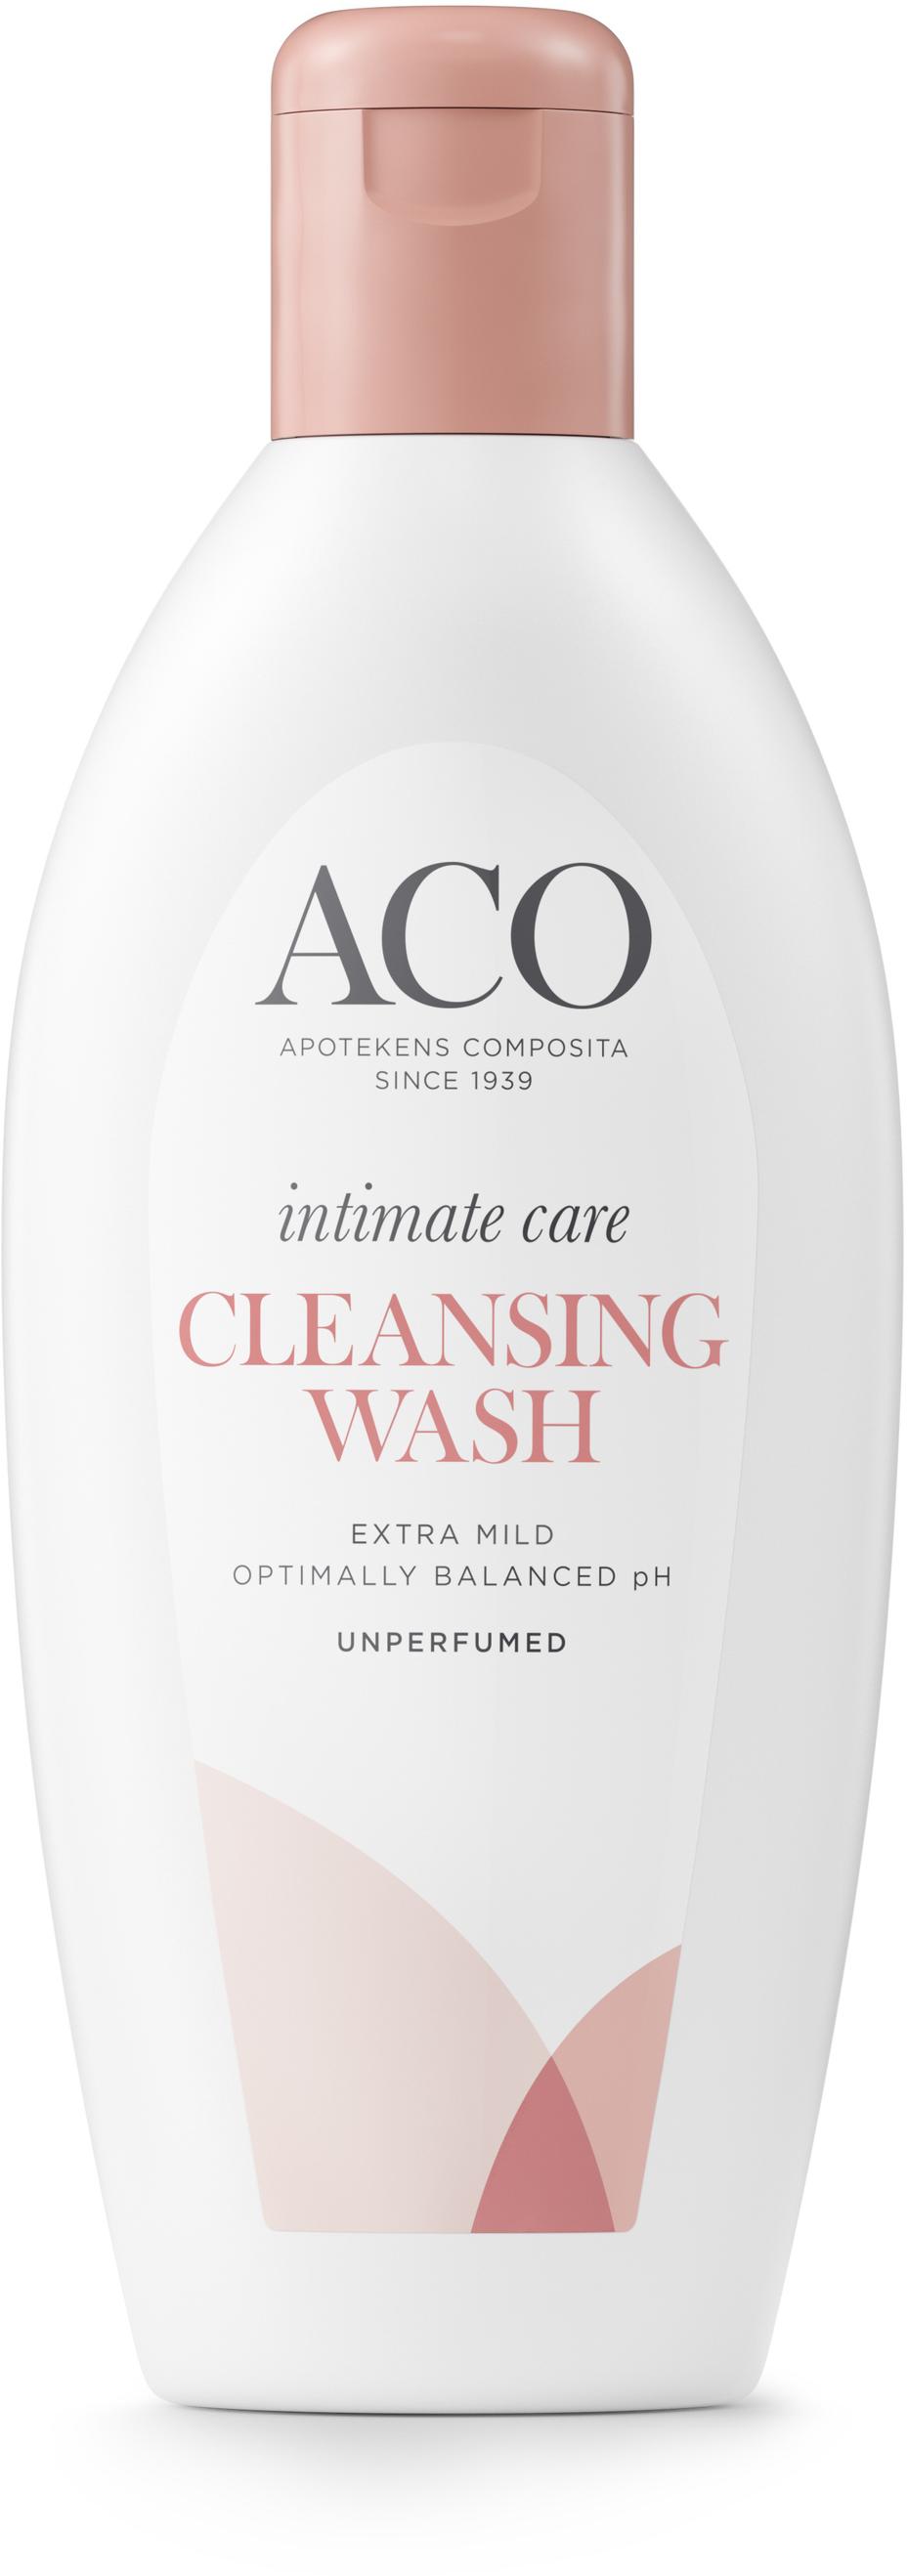 ACO Intimate Care Cleansing Wash 250 ml för 59 kr på Apotek Hjärtat